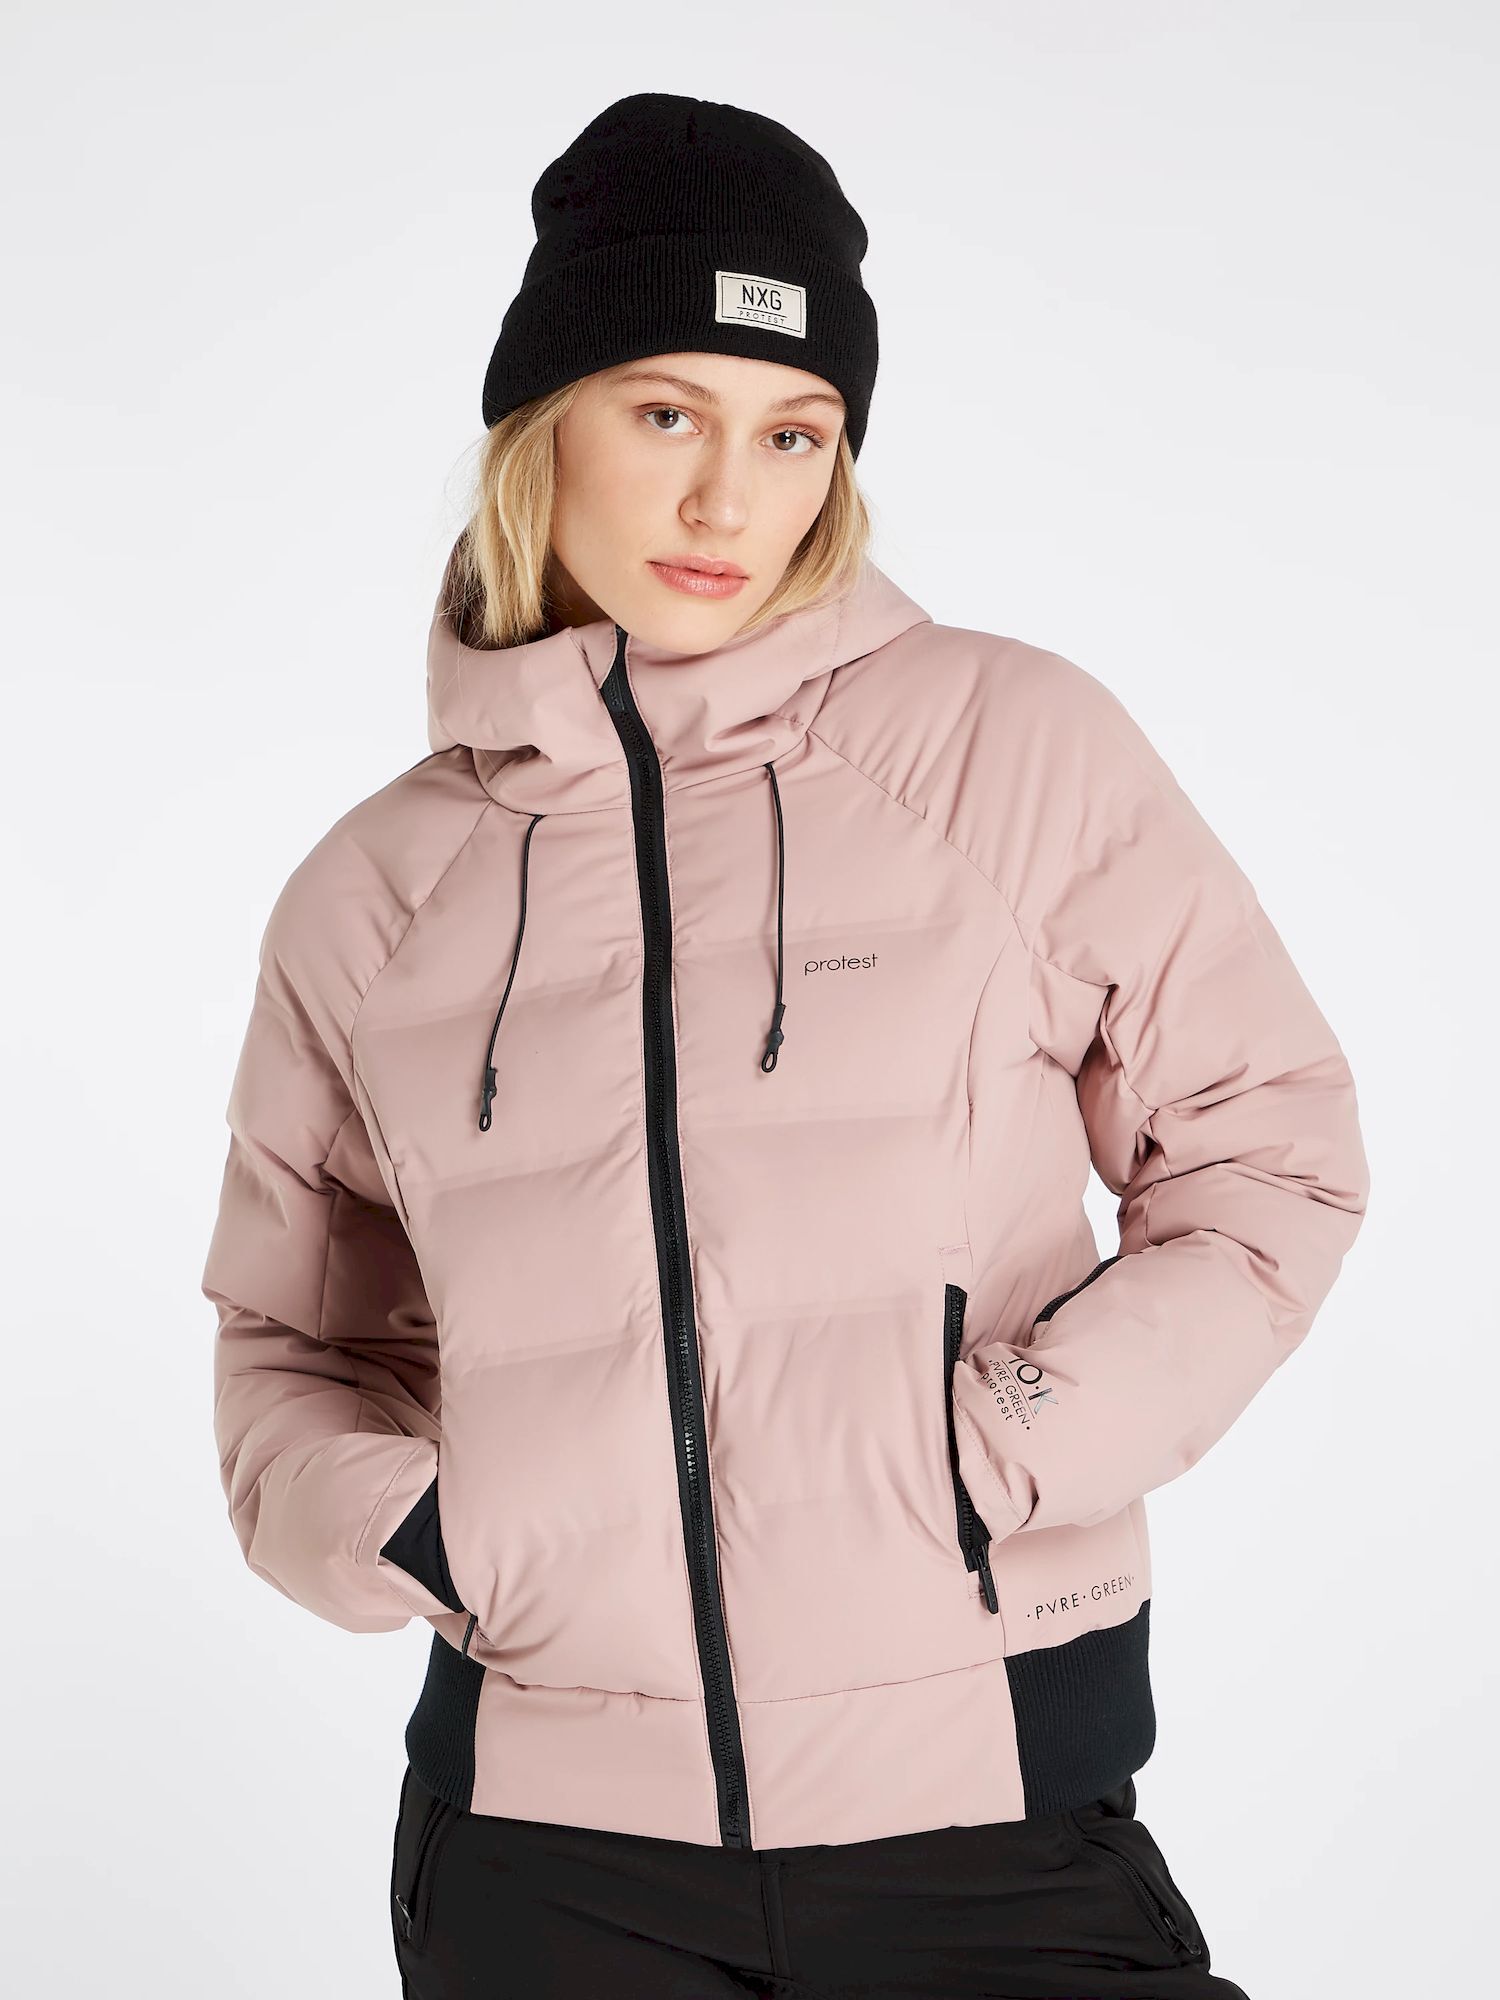 Protest Prtalyssum - Ski jacket - Women's | Hardloop